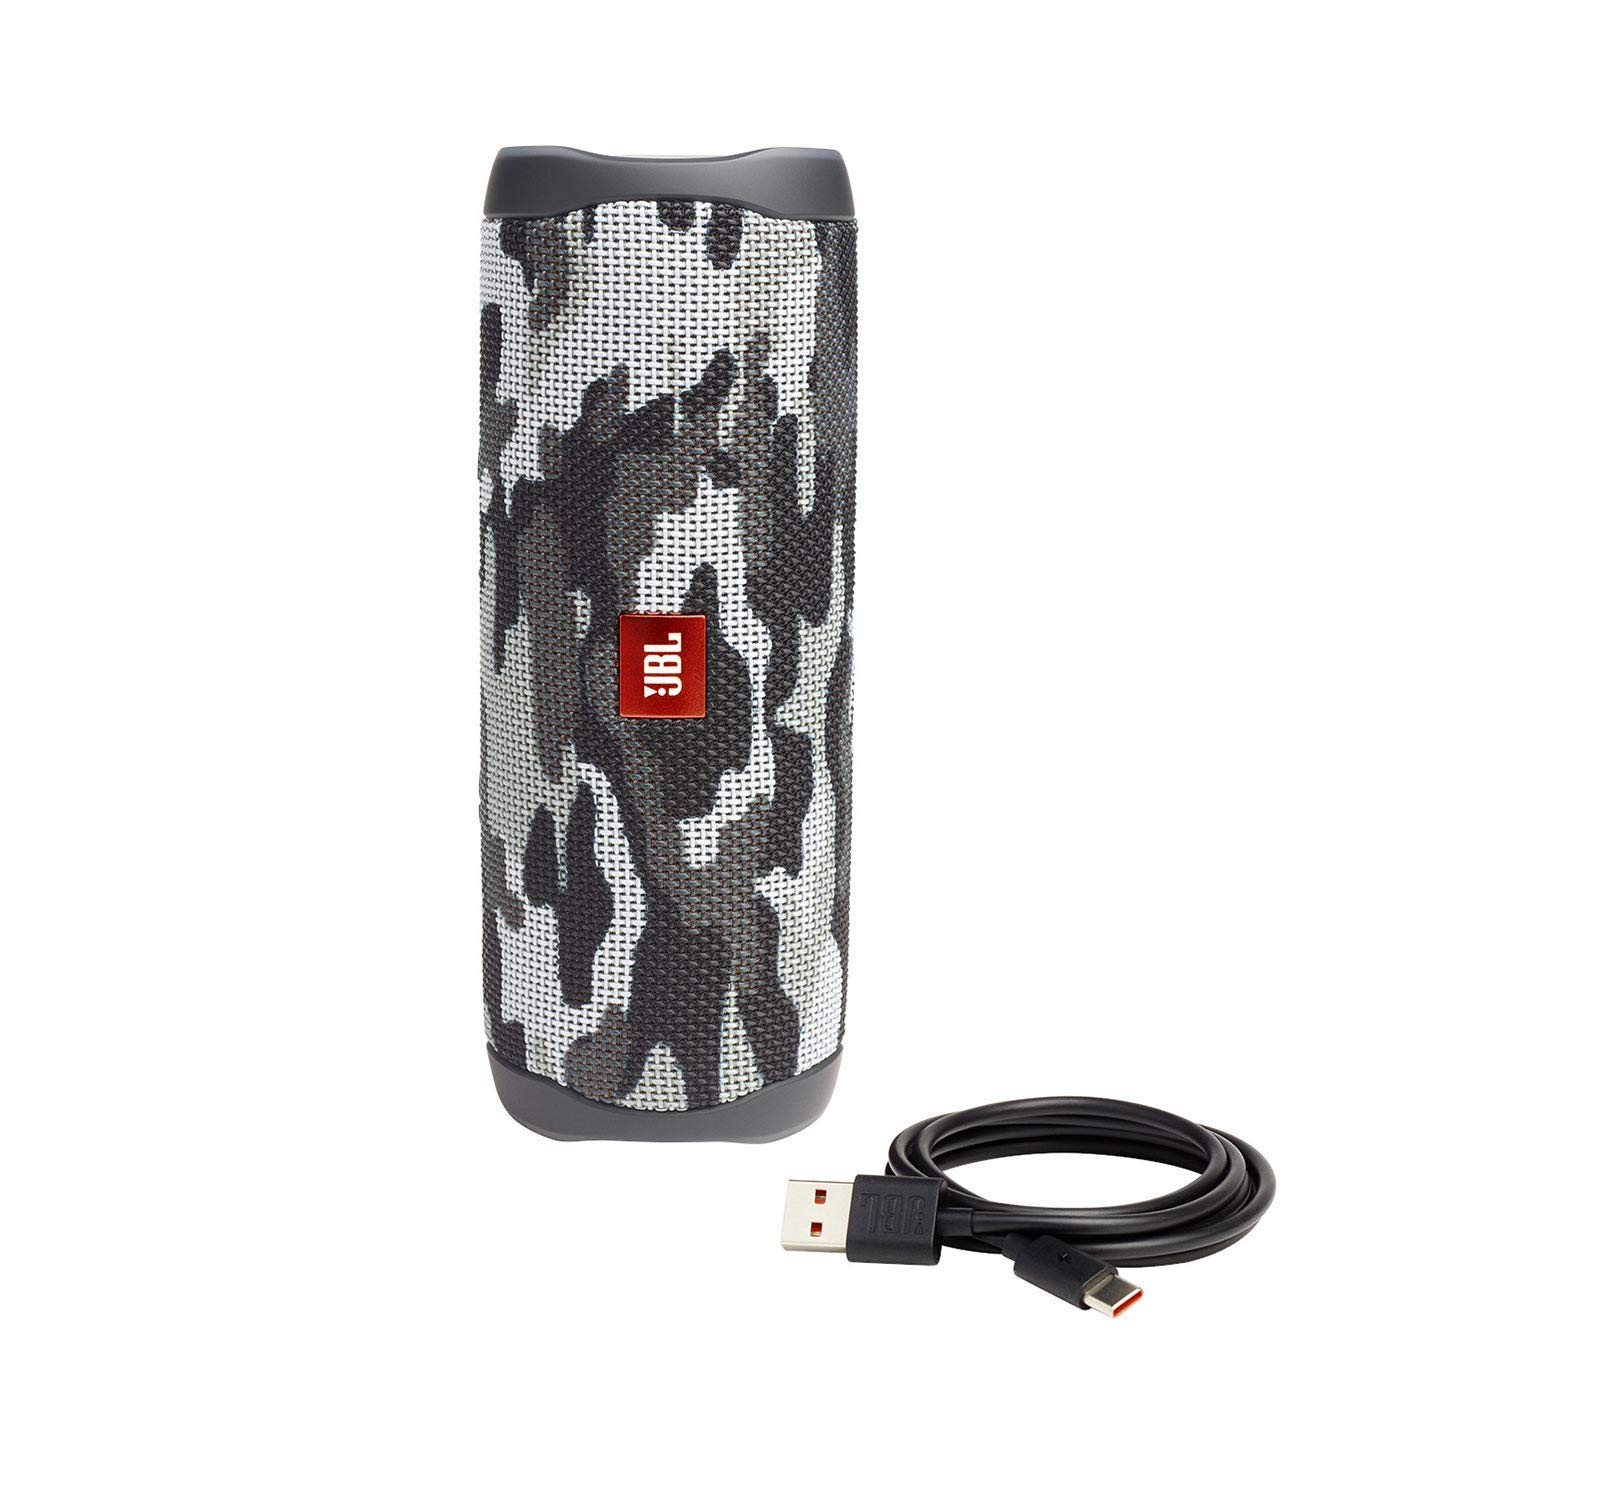 JBL Flip 5 Portable Waterproof Wireless Bluetooth Speaker - Black Camo (Renewed)